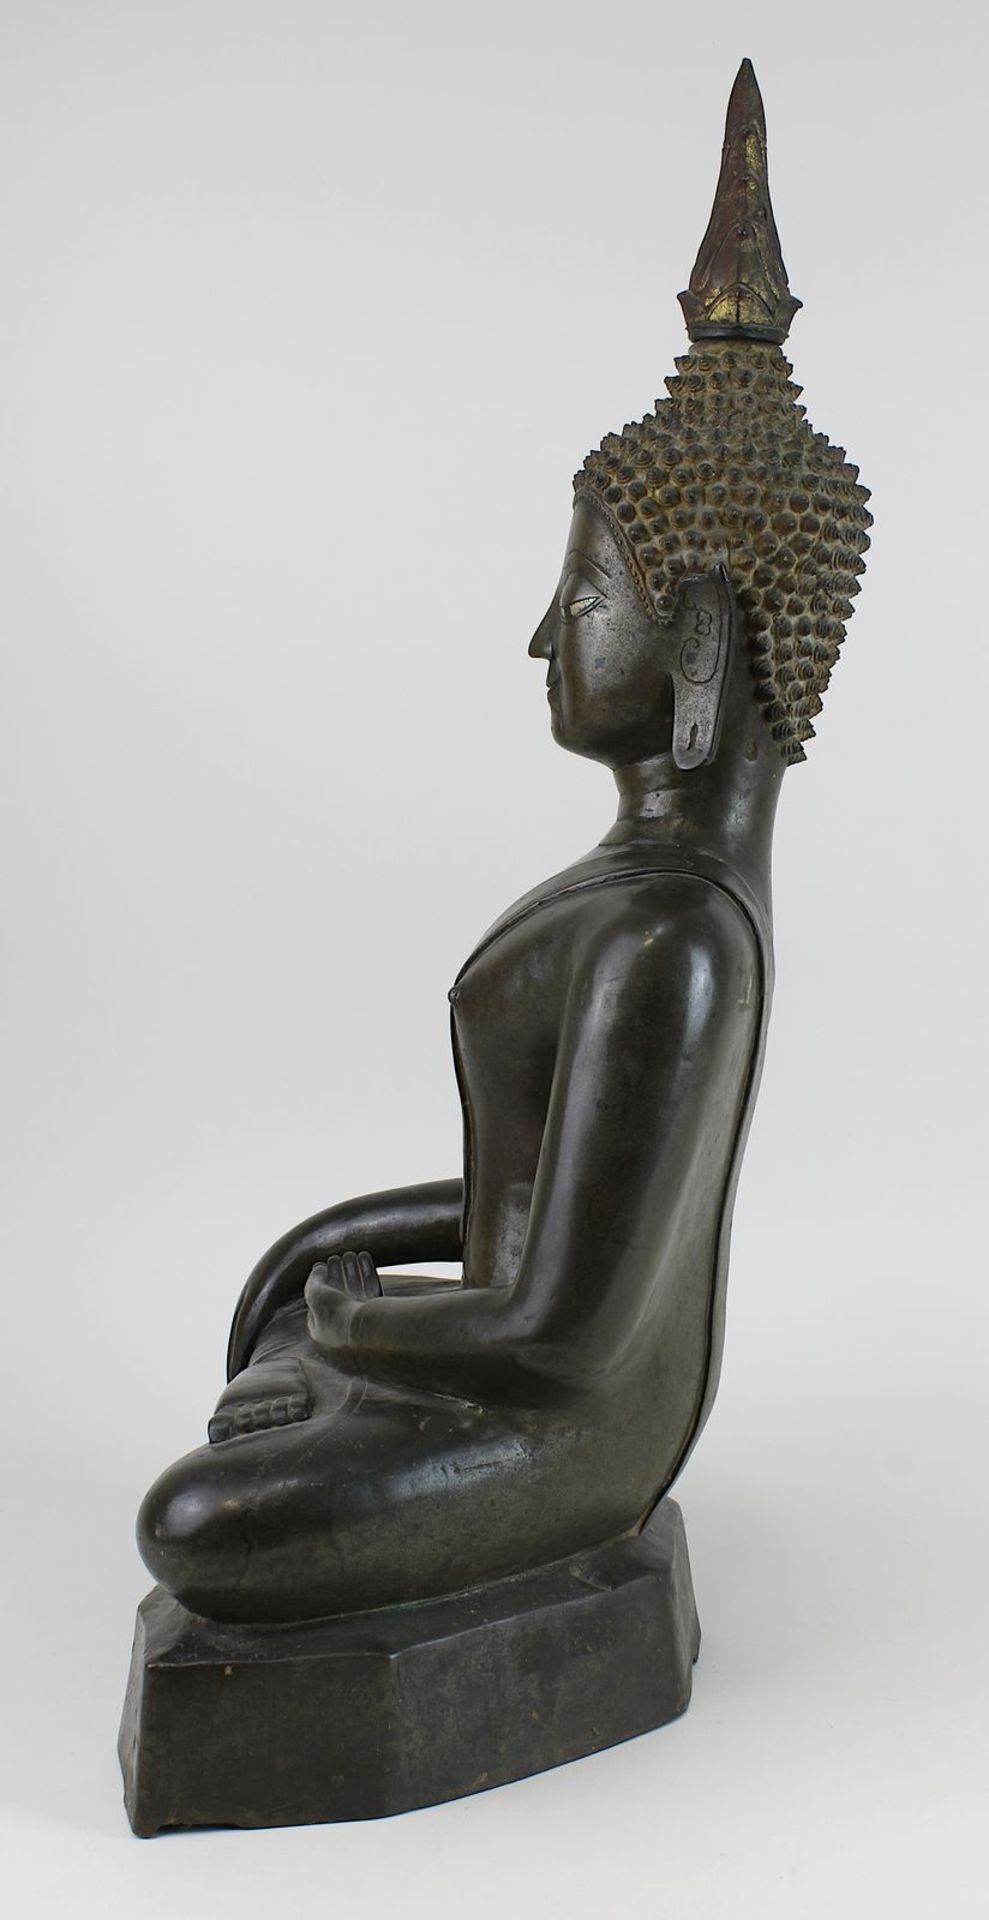 Großer Bronze-Buddha, Siam wohl um 1800, Buddha in Meditationshaltung auf glattem mehreckigem Sockel - Bild 4 aus 6